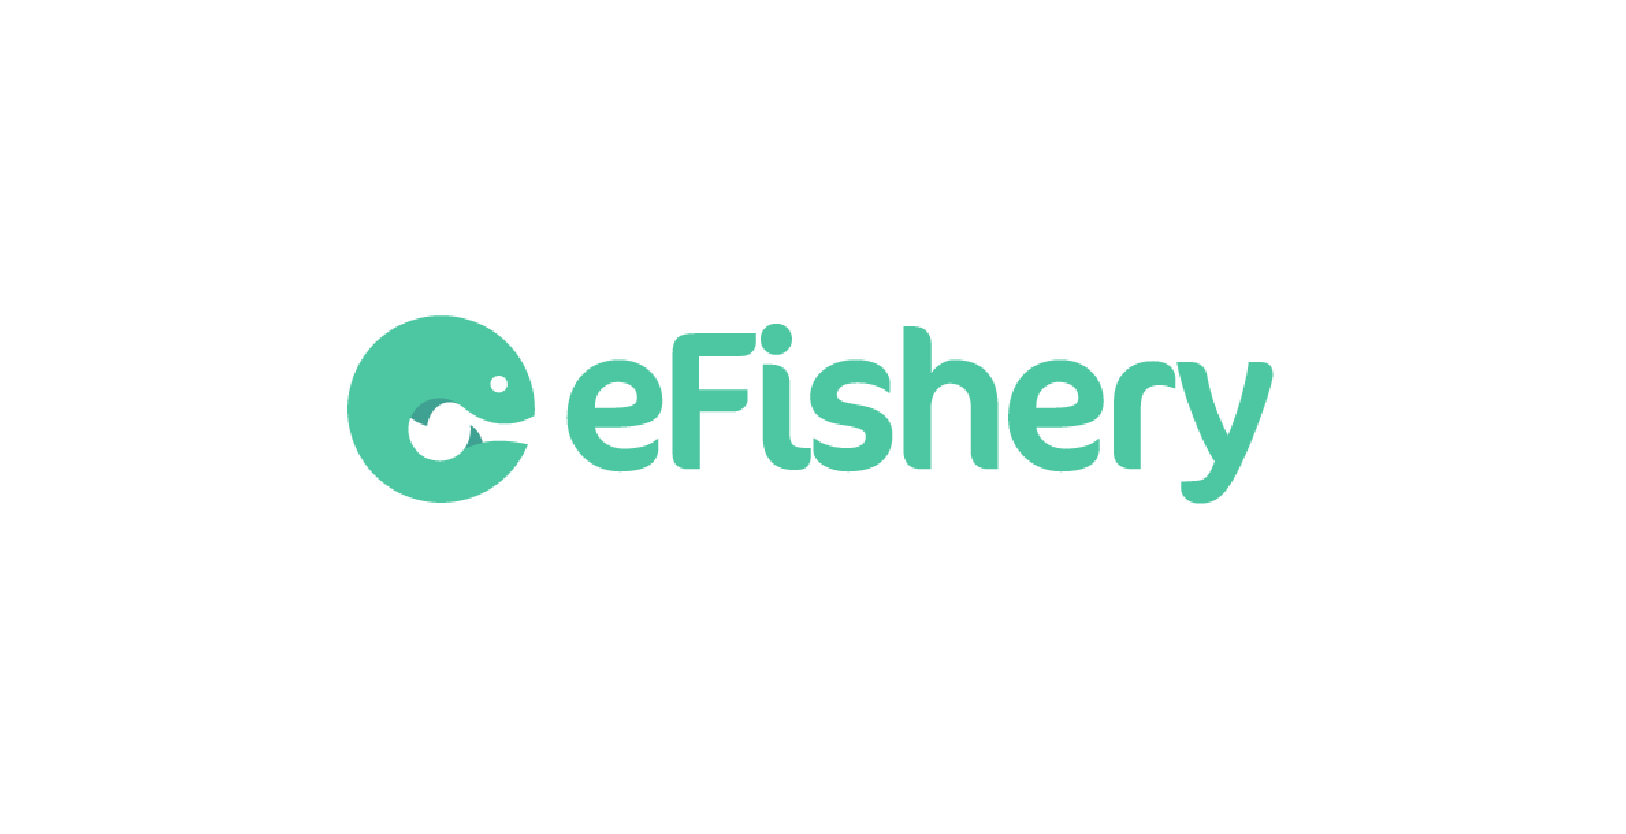 VisionFund Portfolio Company eFishery's Logo